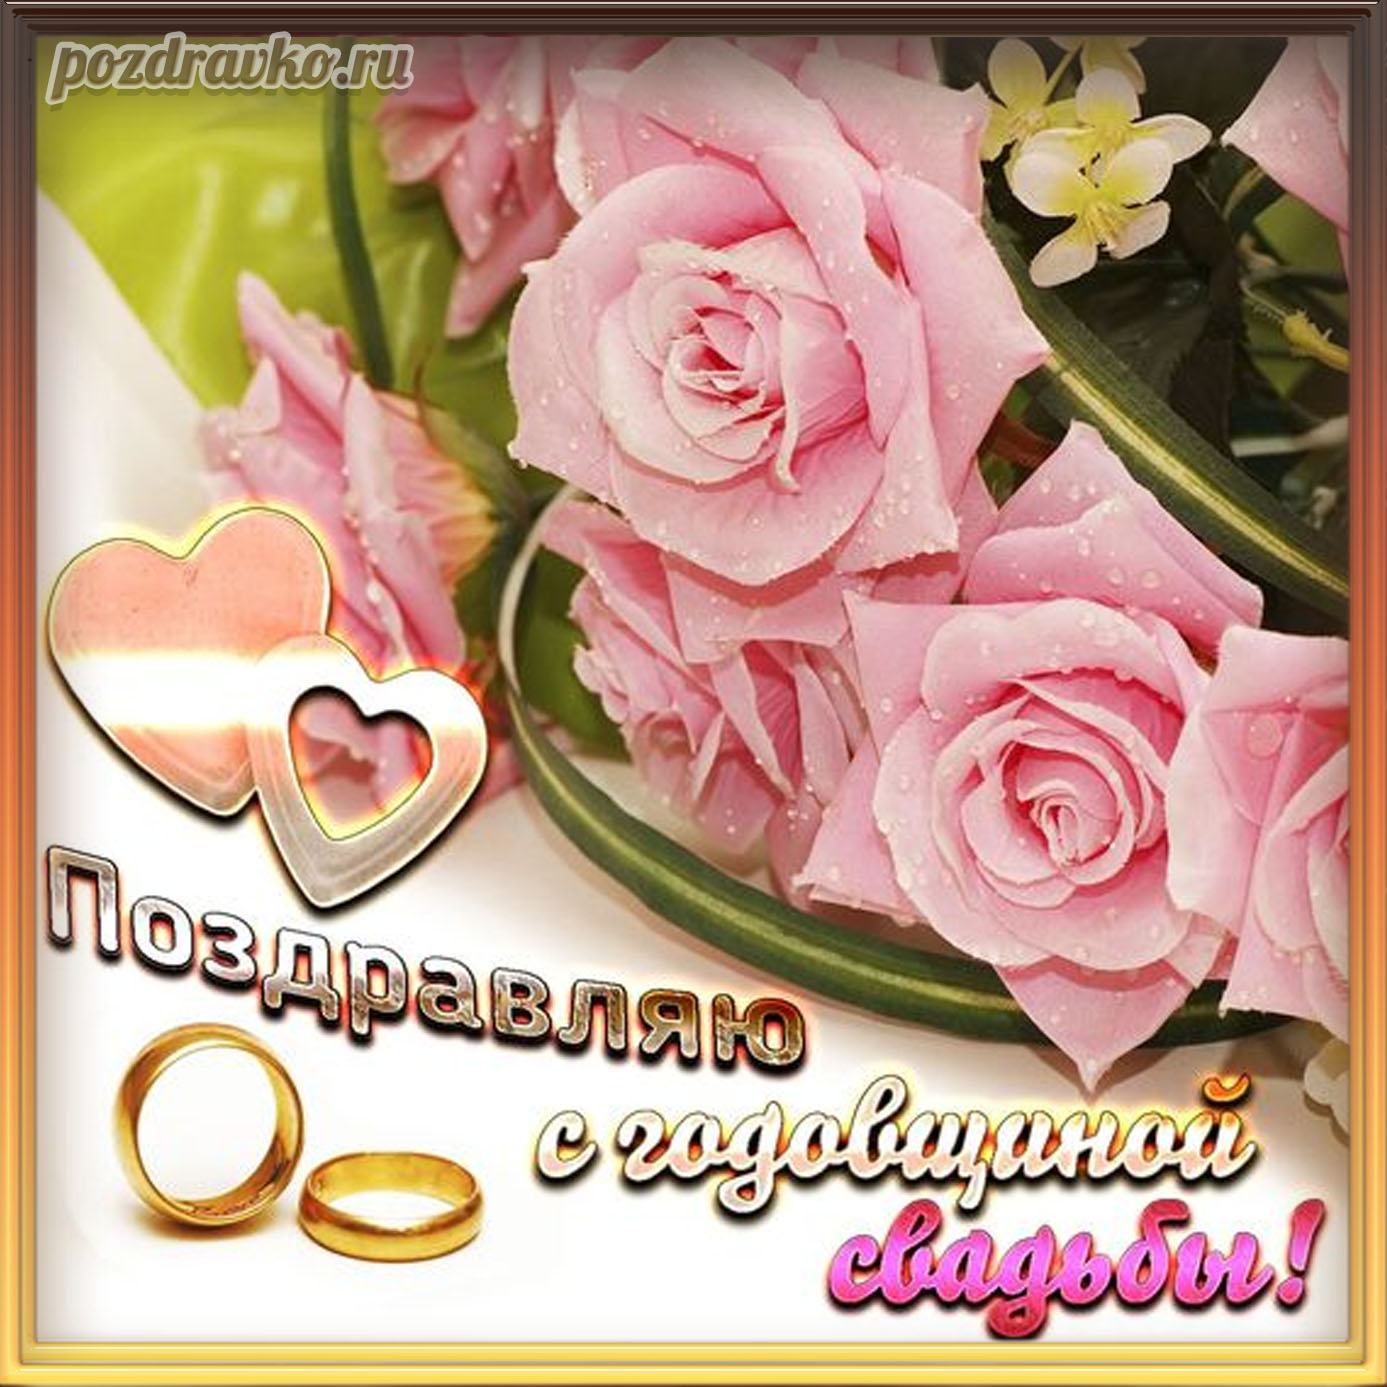 Открытка - поздравляю с годовщиной свадьбы красивая открытка с розами. Скачать бесплатно или отправить картинку.